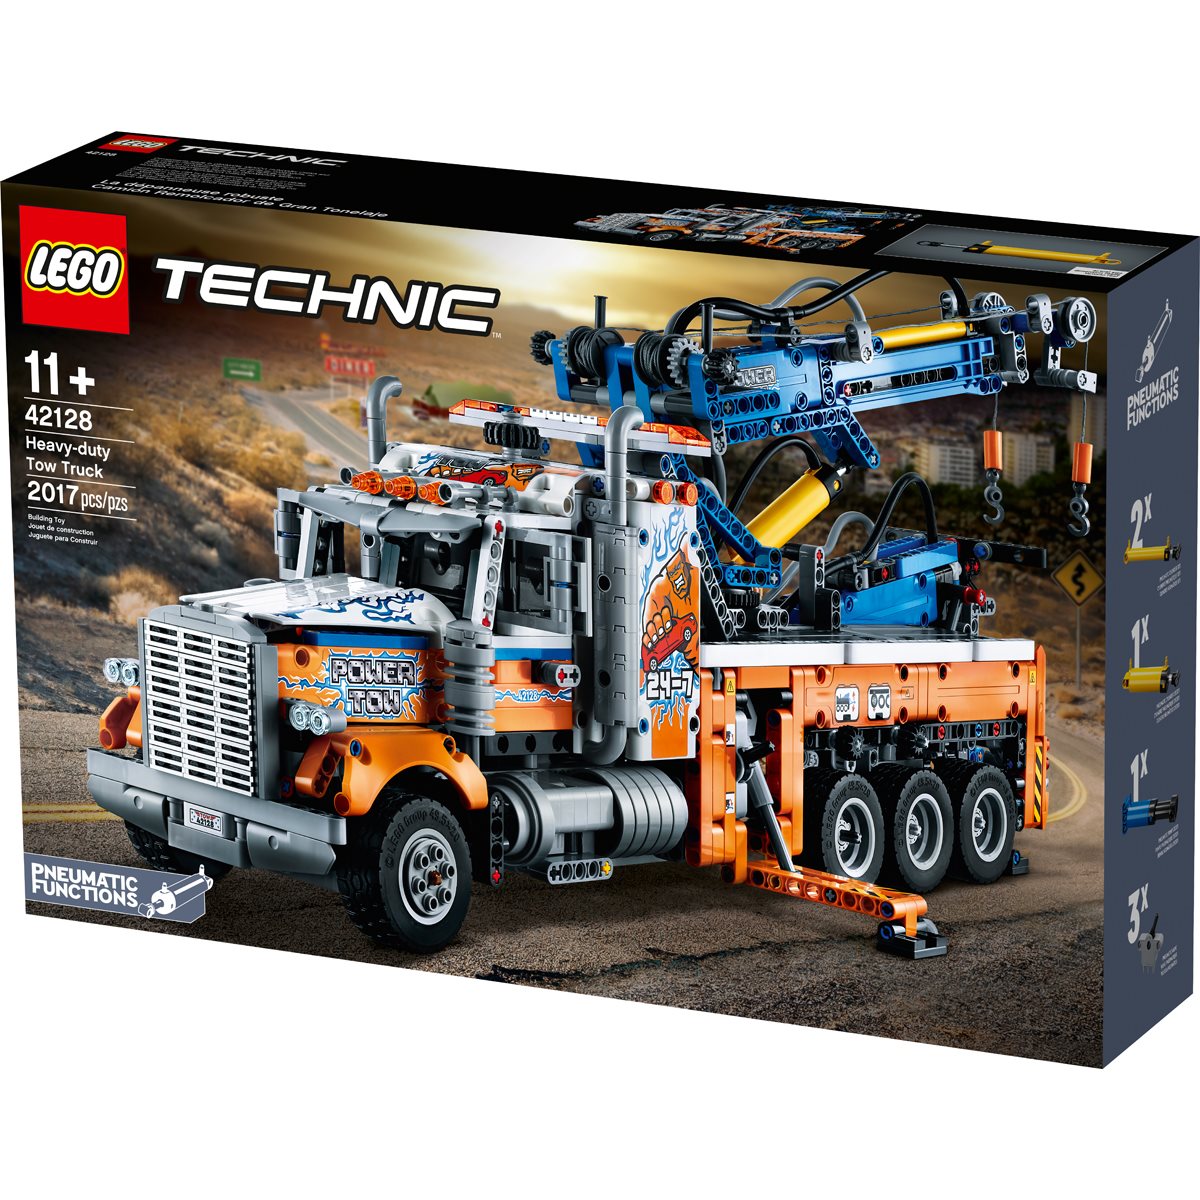 boezem Kalmerend elke keer LEGO 42128 Technic Heavy-duty Tow Truck - Entertainment Earth